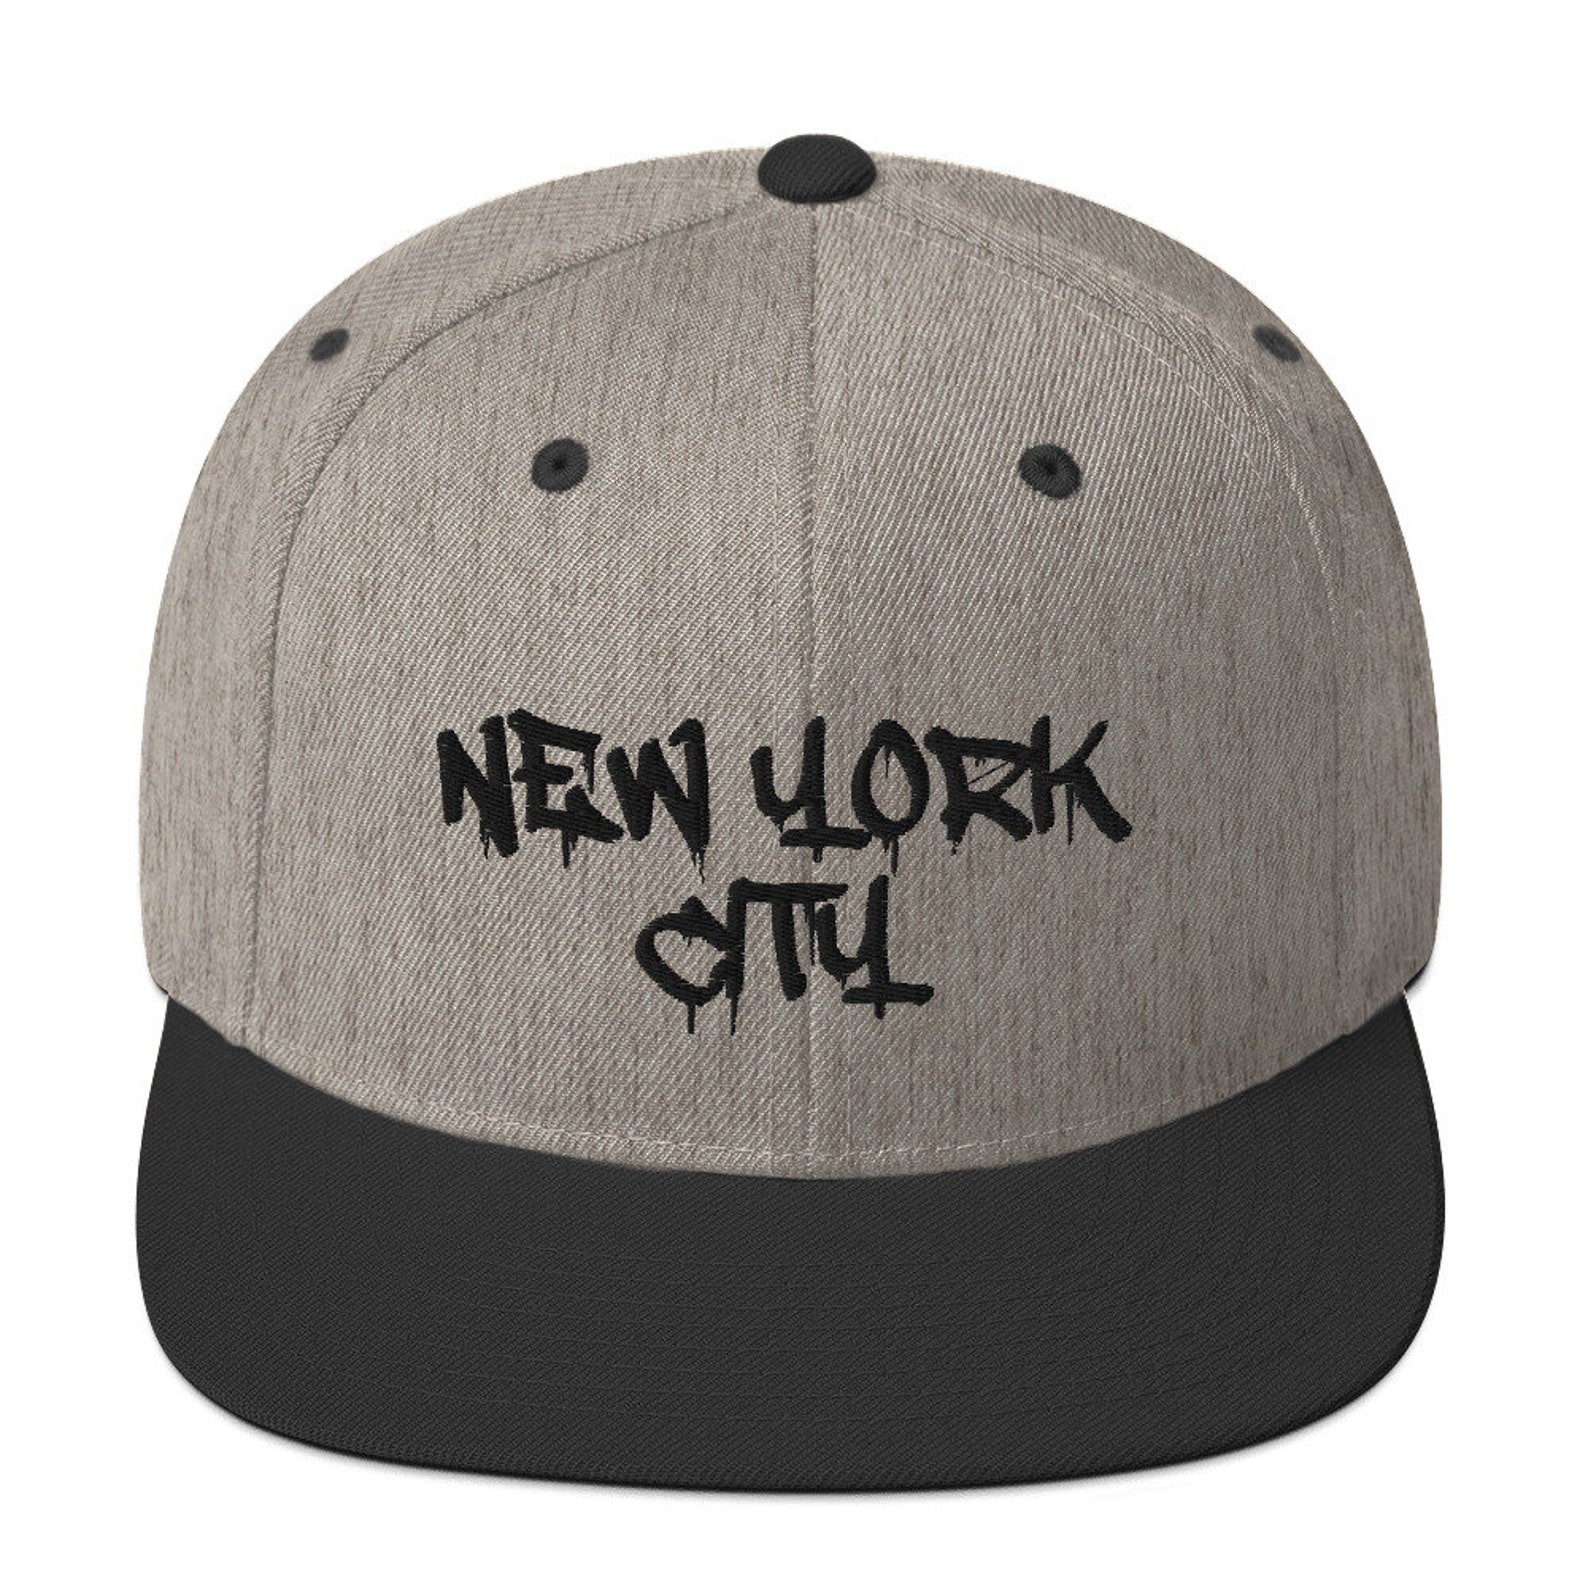 New York City - Etsy